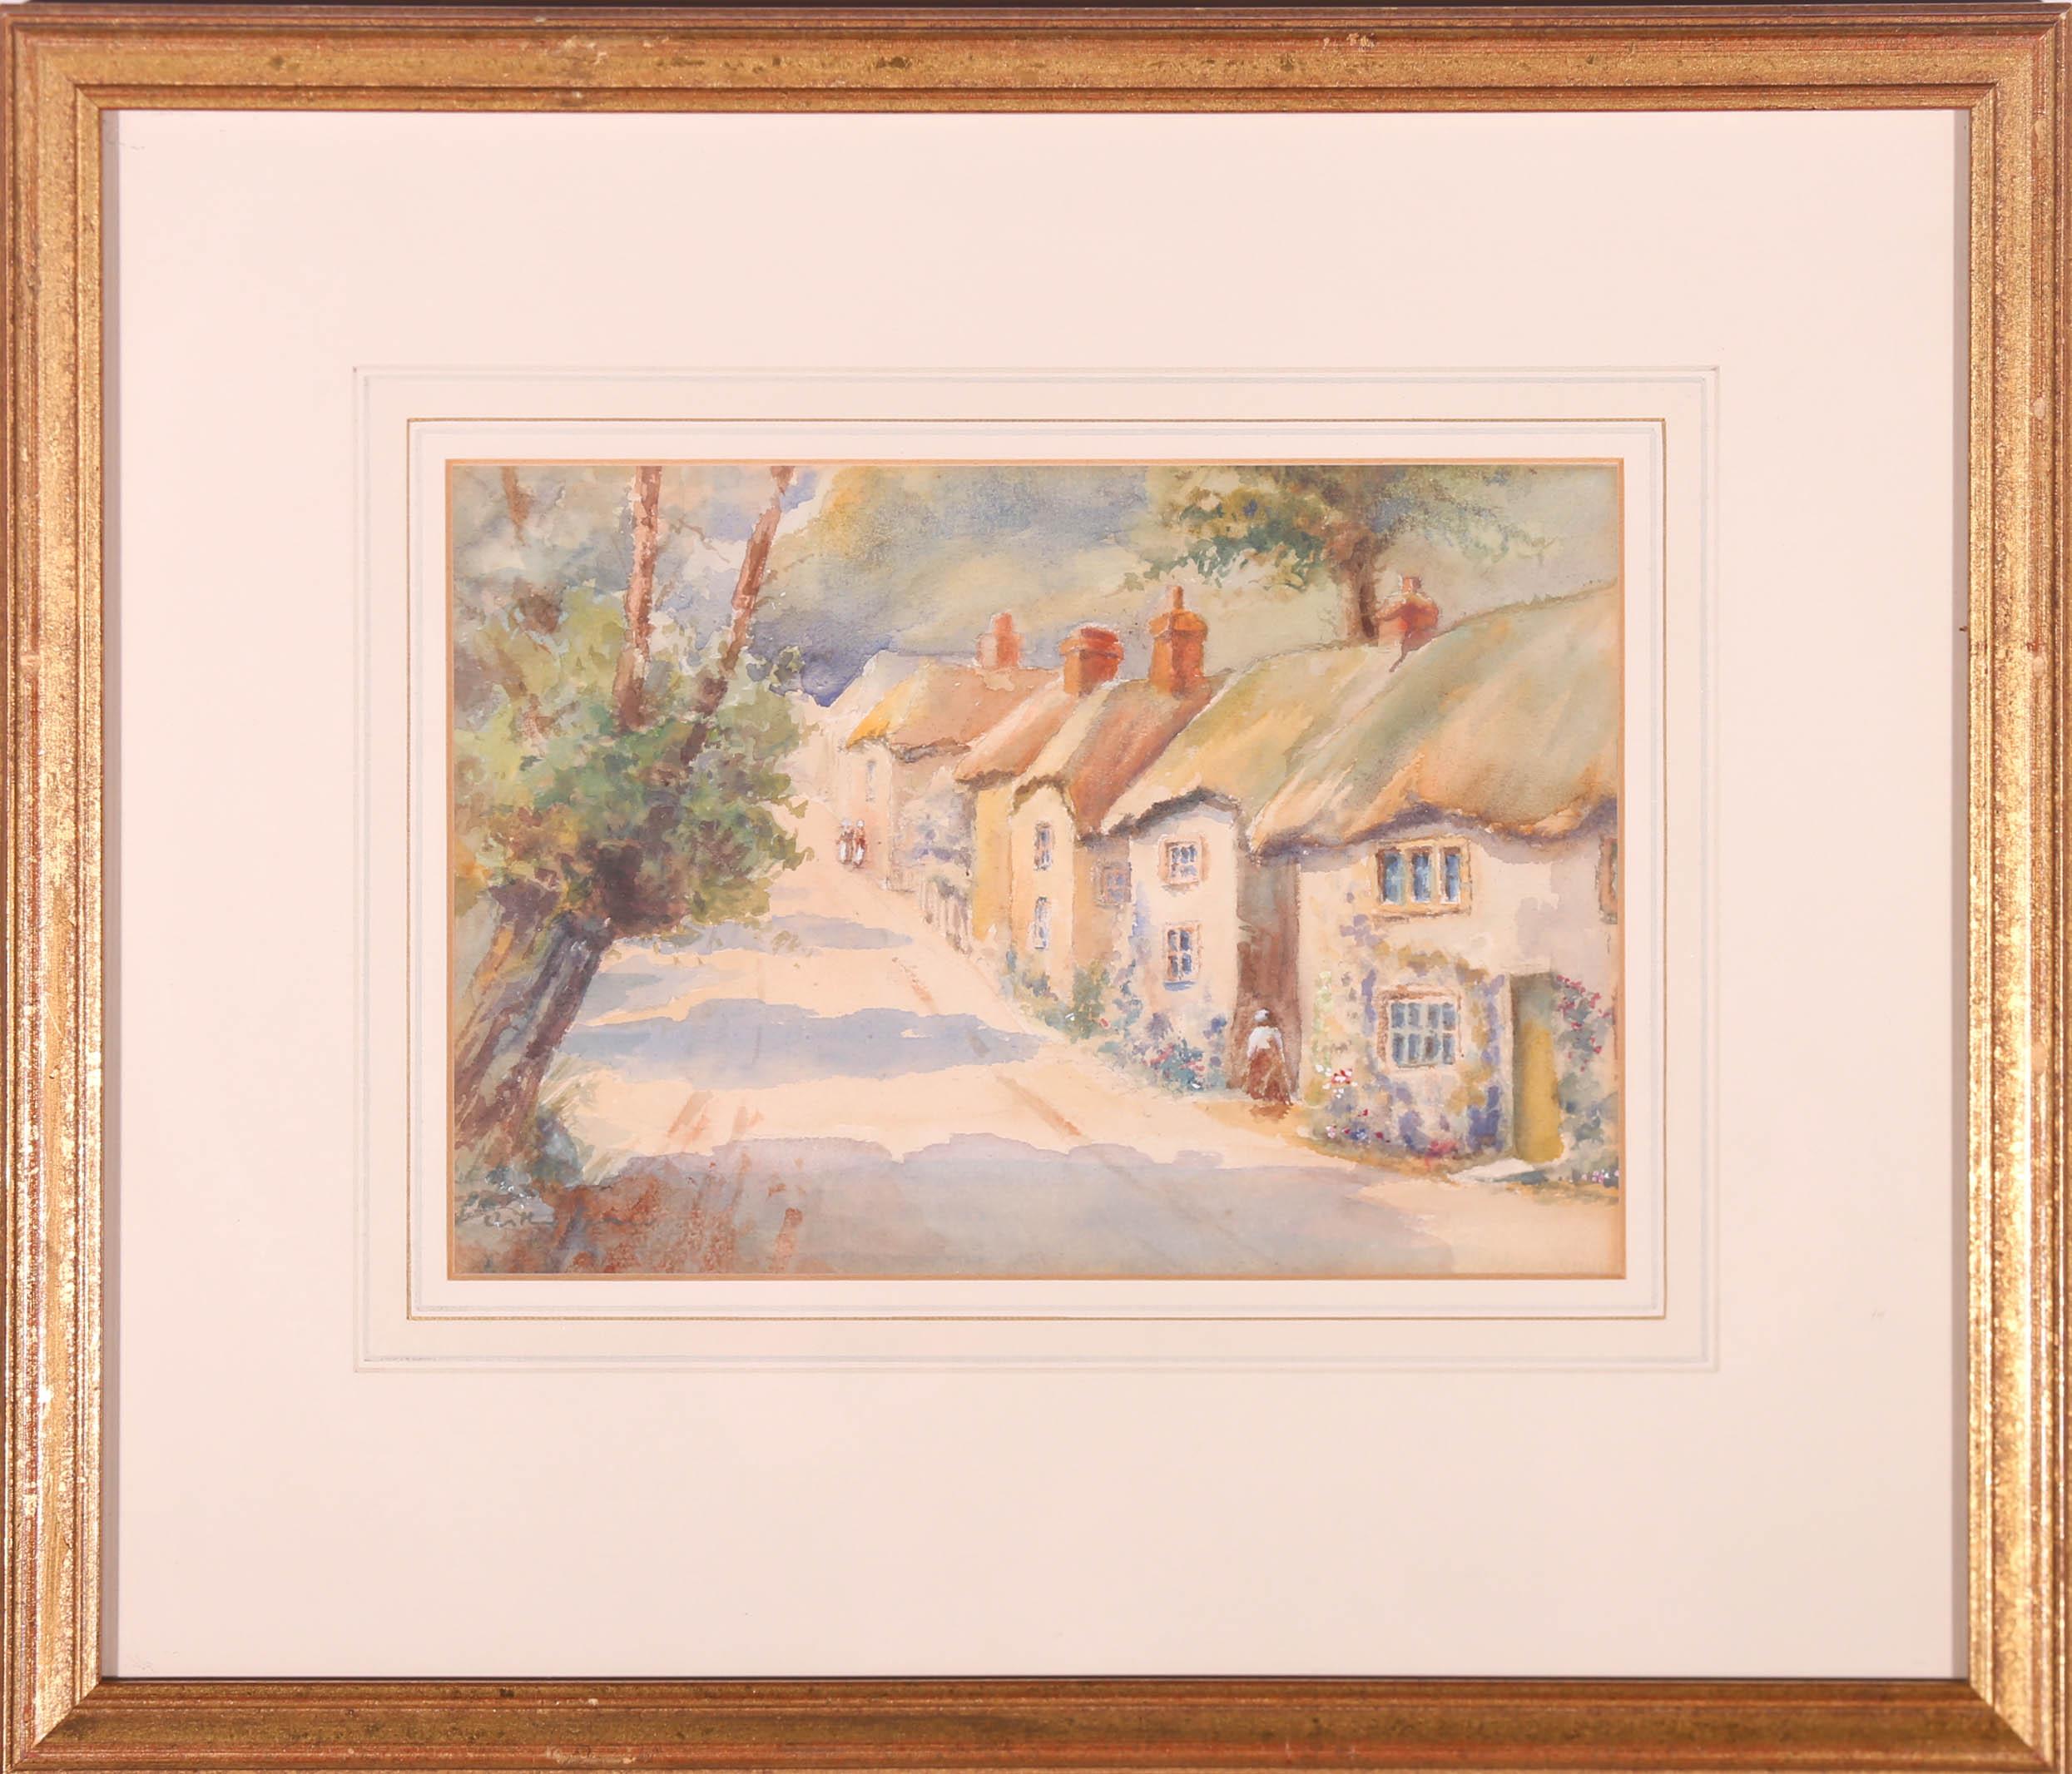 Dieses beeindruckende Aquarell von Arthur Spooner (1873-1962) zeigt eine perspektivische Ansicht einer sonnigen Dorfstraße mit hübschen reetgedeckten Häusern auf der rechten Seite. Das Kunstwerk ist unten links und auf der Rückseite signiert.